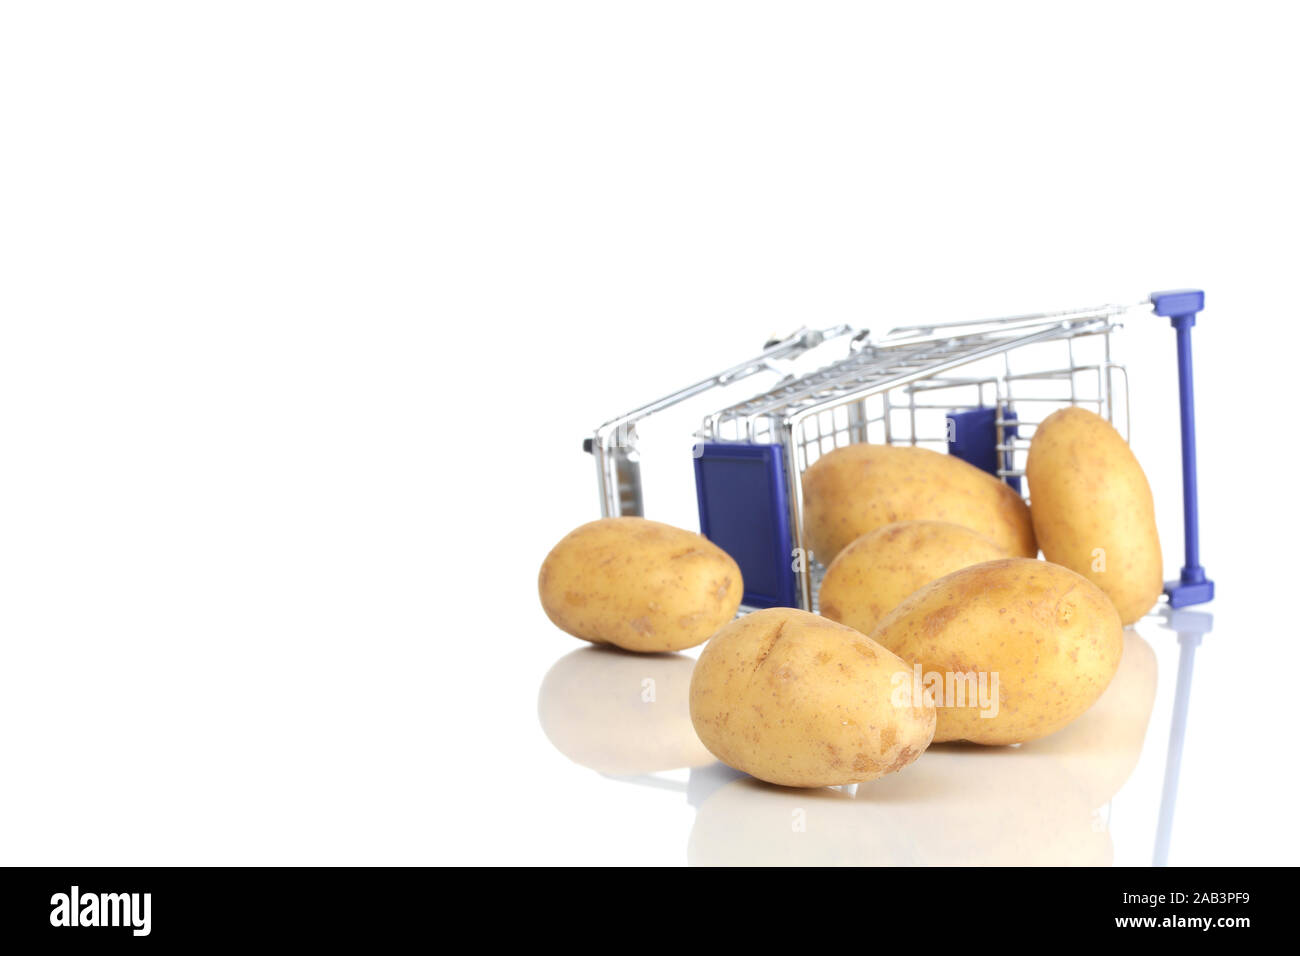 Einkaufswagen und Kartoffel Stock Photo